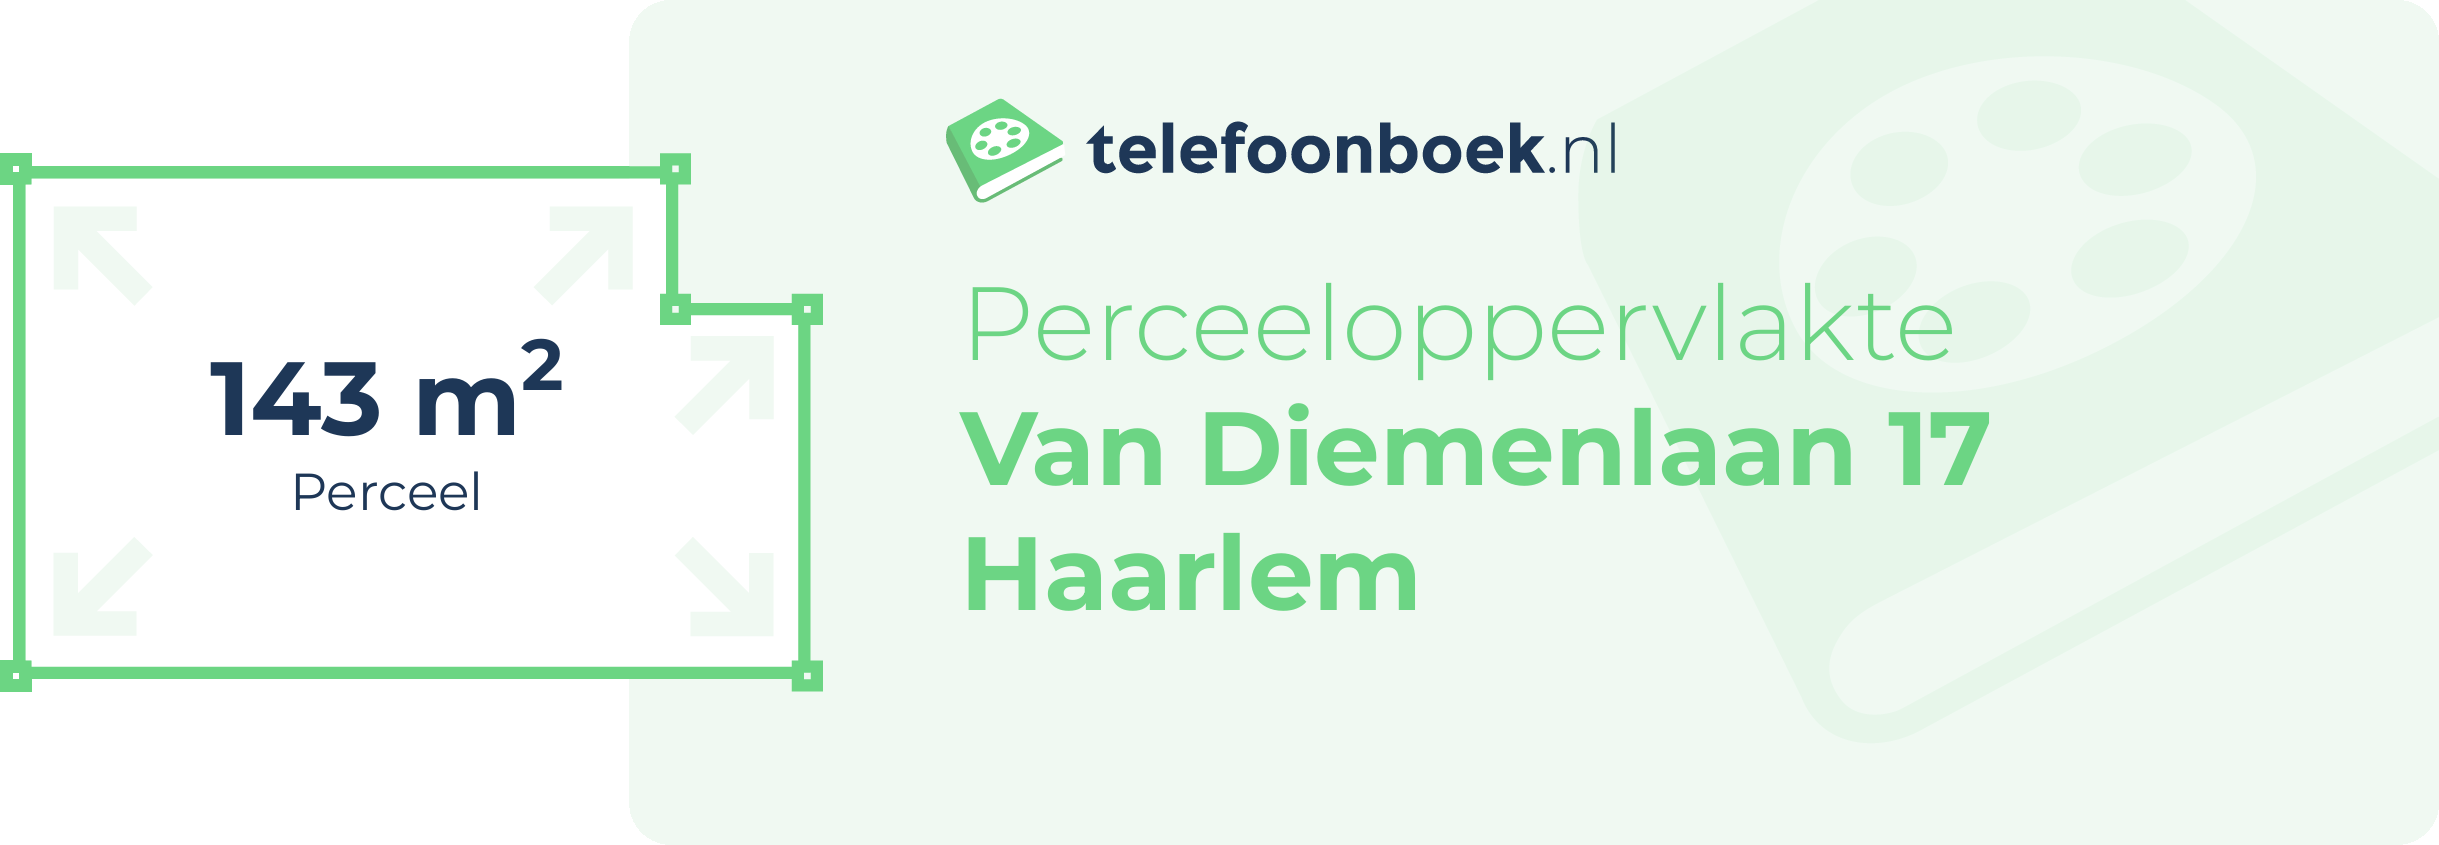 Perceeloppervlakte Van Diemenlaan 17 Haarlem